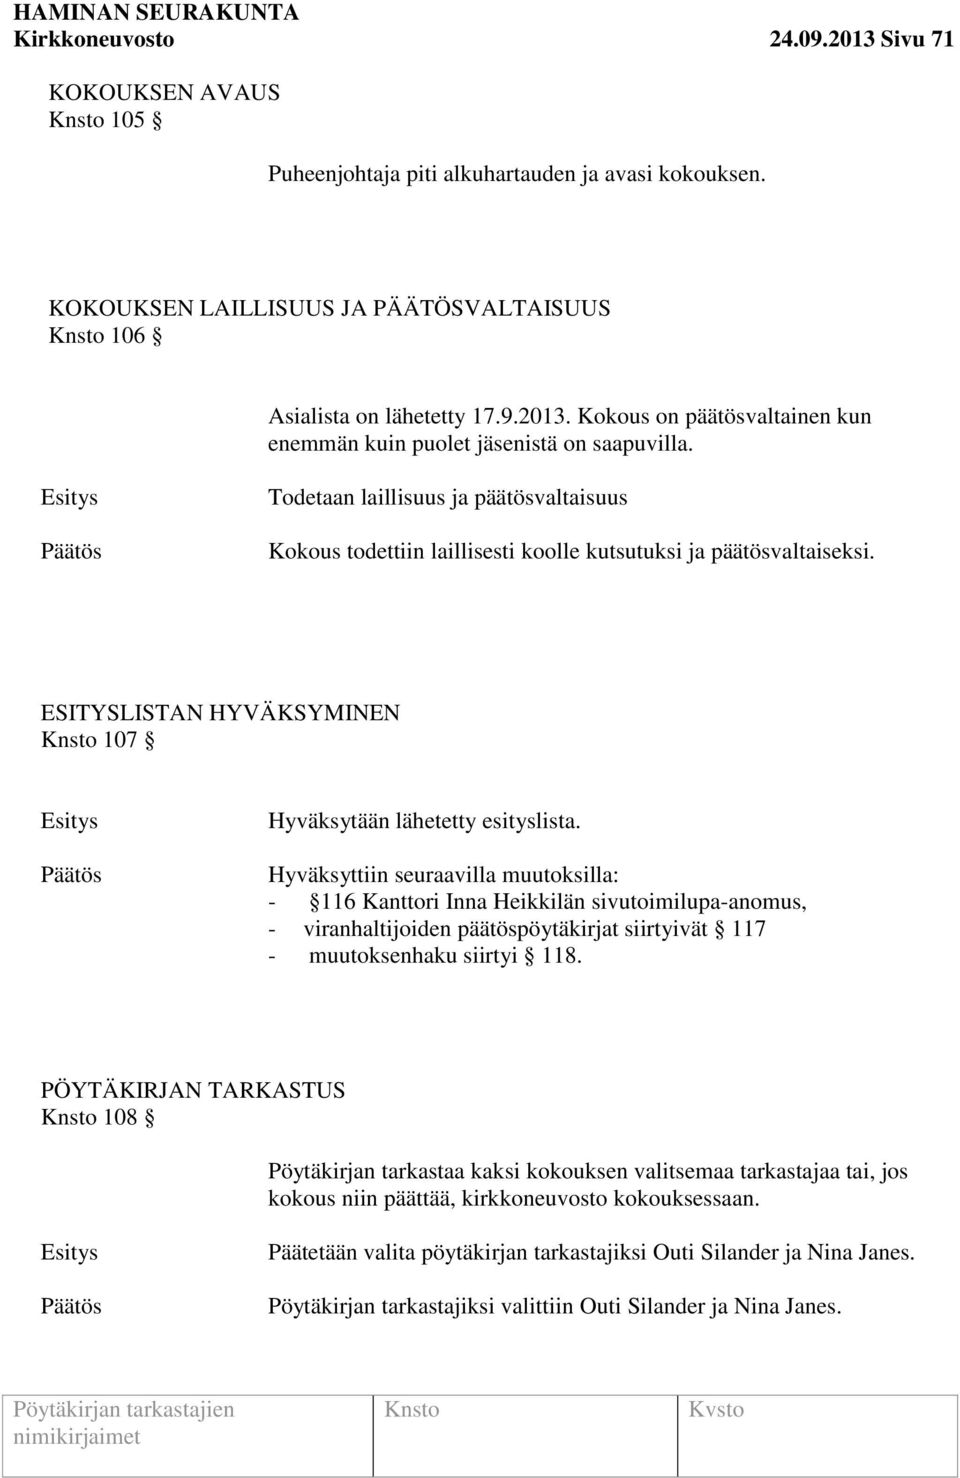 Hyväksyttiin seuraavilla muutoksilla: - 116 Kanttori Inna Heikkilän sivutoimilupa-anomus, - viranhaltijoiden päätöspöytäkirjat siirtyivät 117 - muutoksenhaku siirtyi 118.